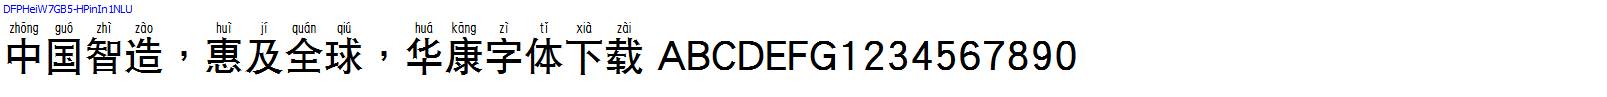 華康字體DFPHeiW7GB5-HPinIn1NLU.TTF